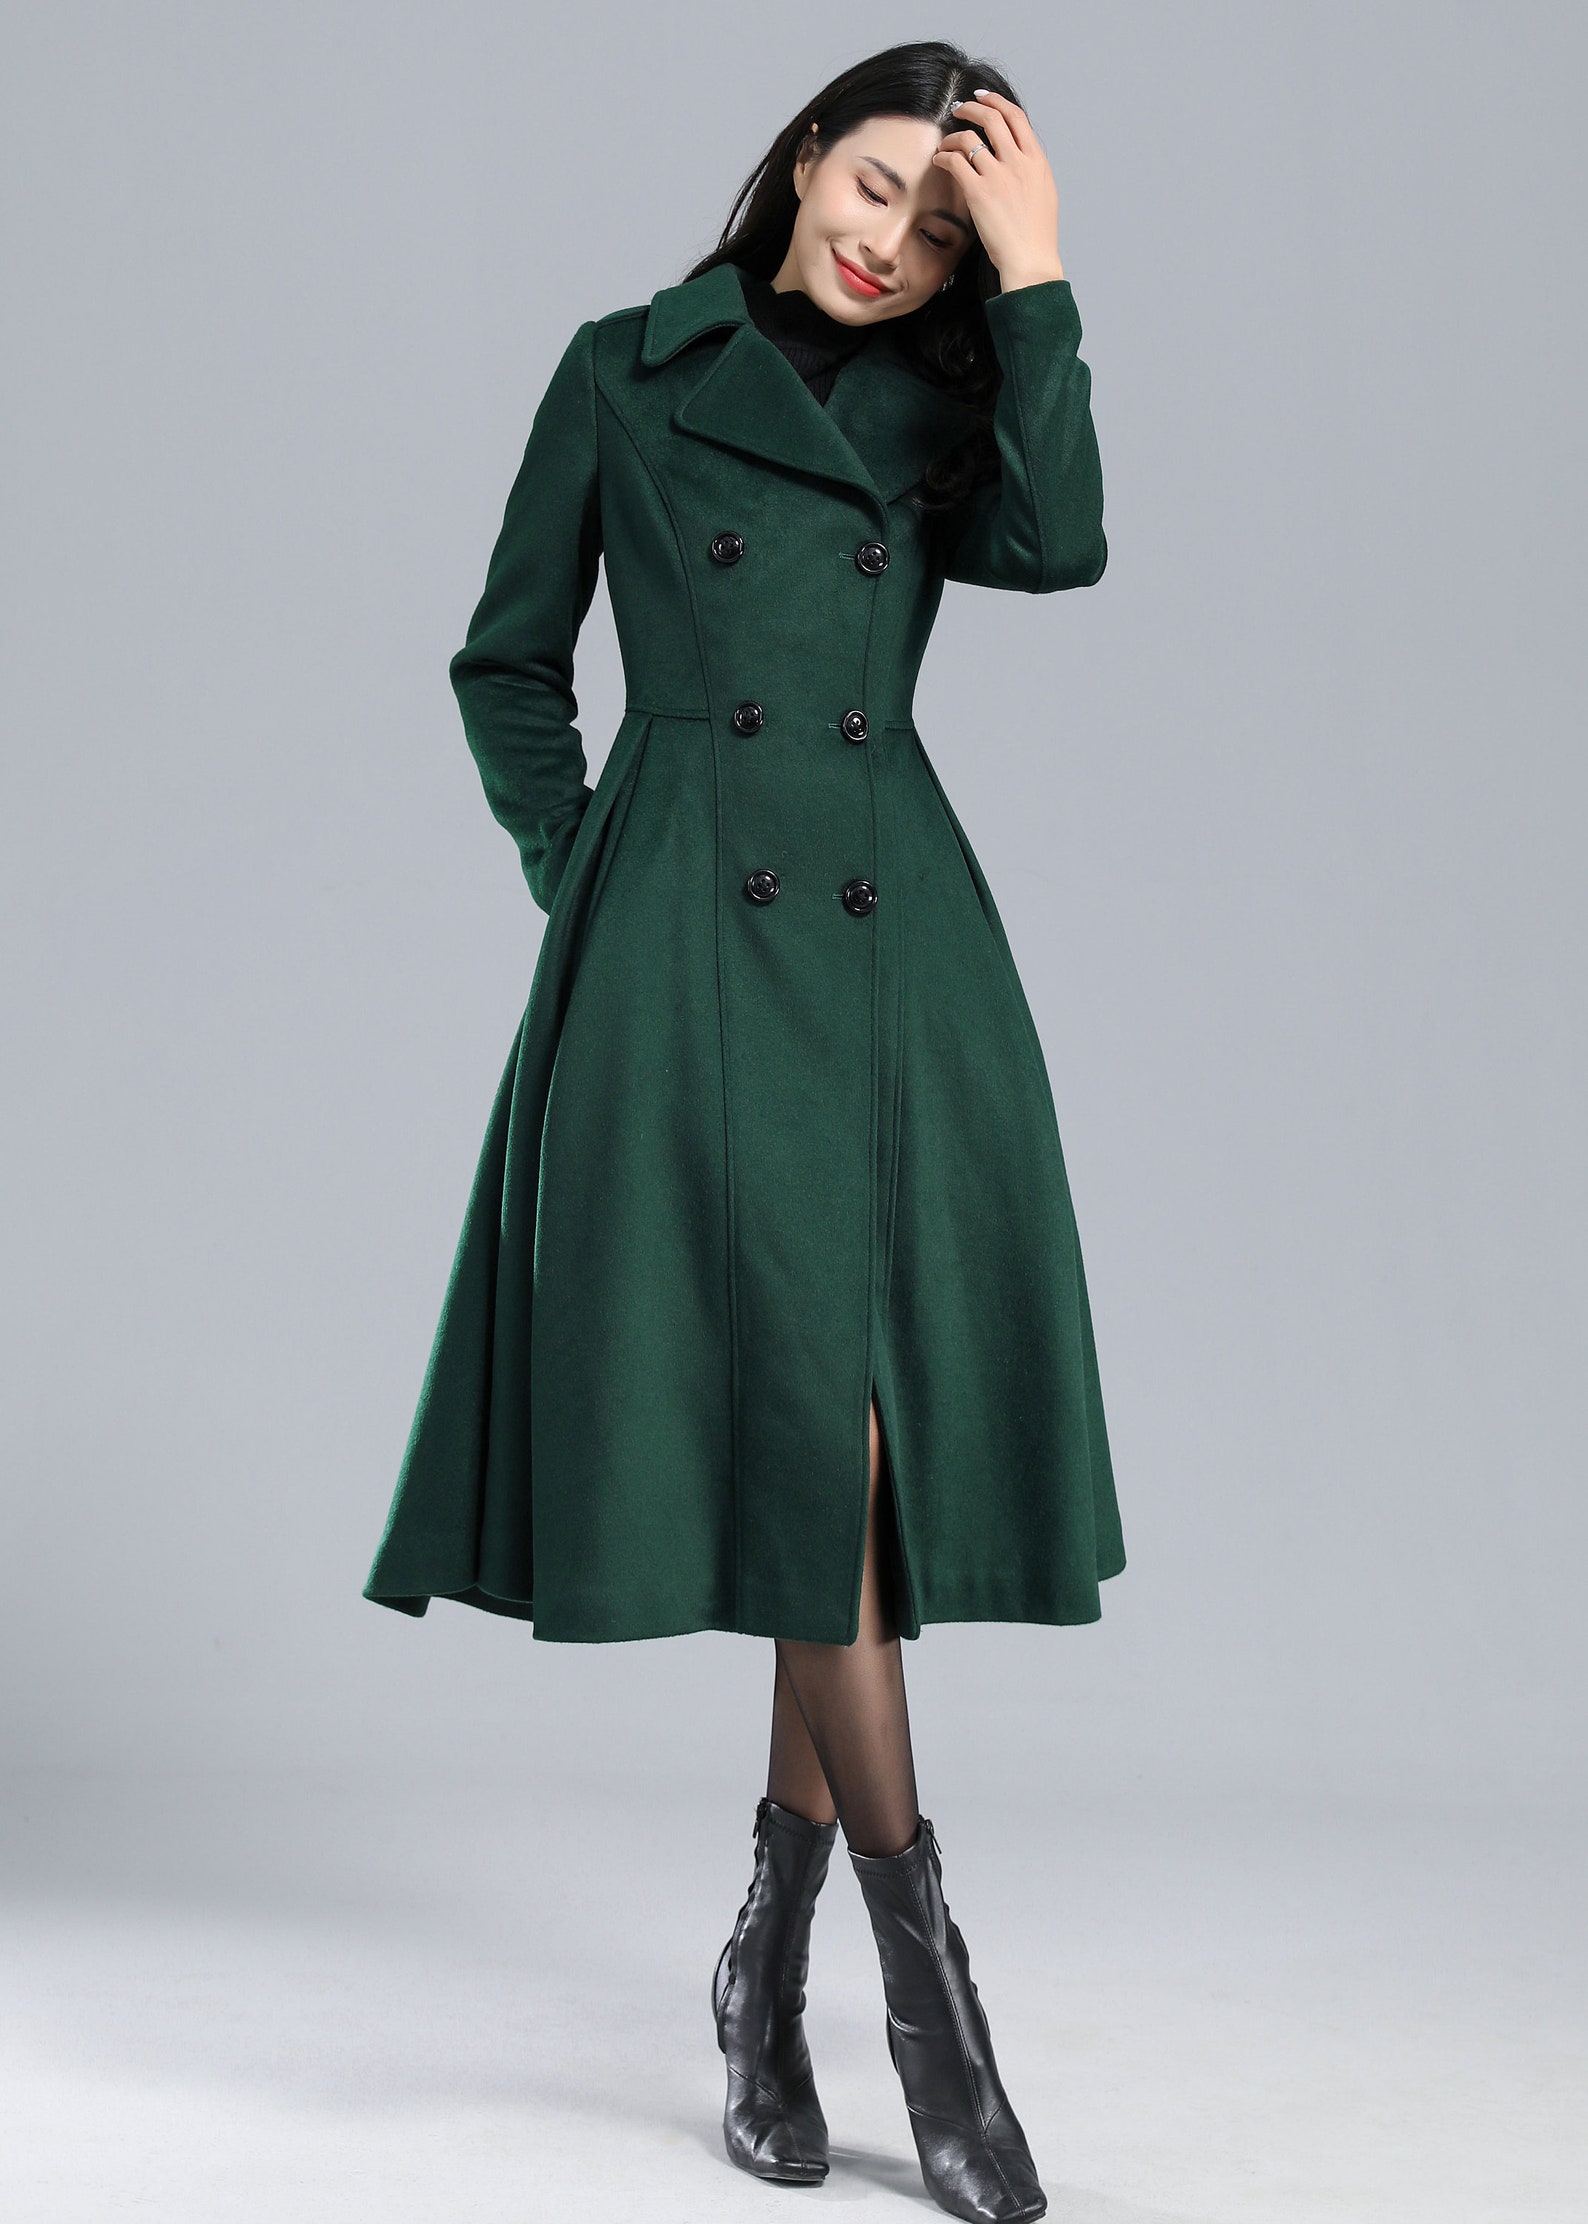 Wool Coat Black Coat Swing Coat Long Coat Long Coat Dress - Etsy